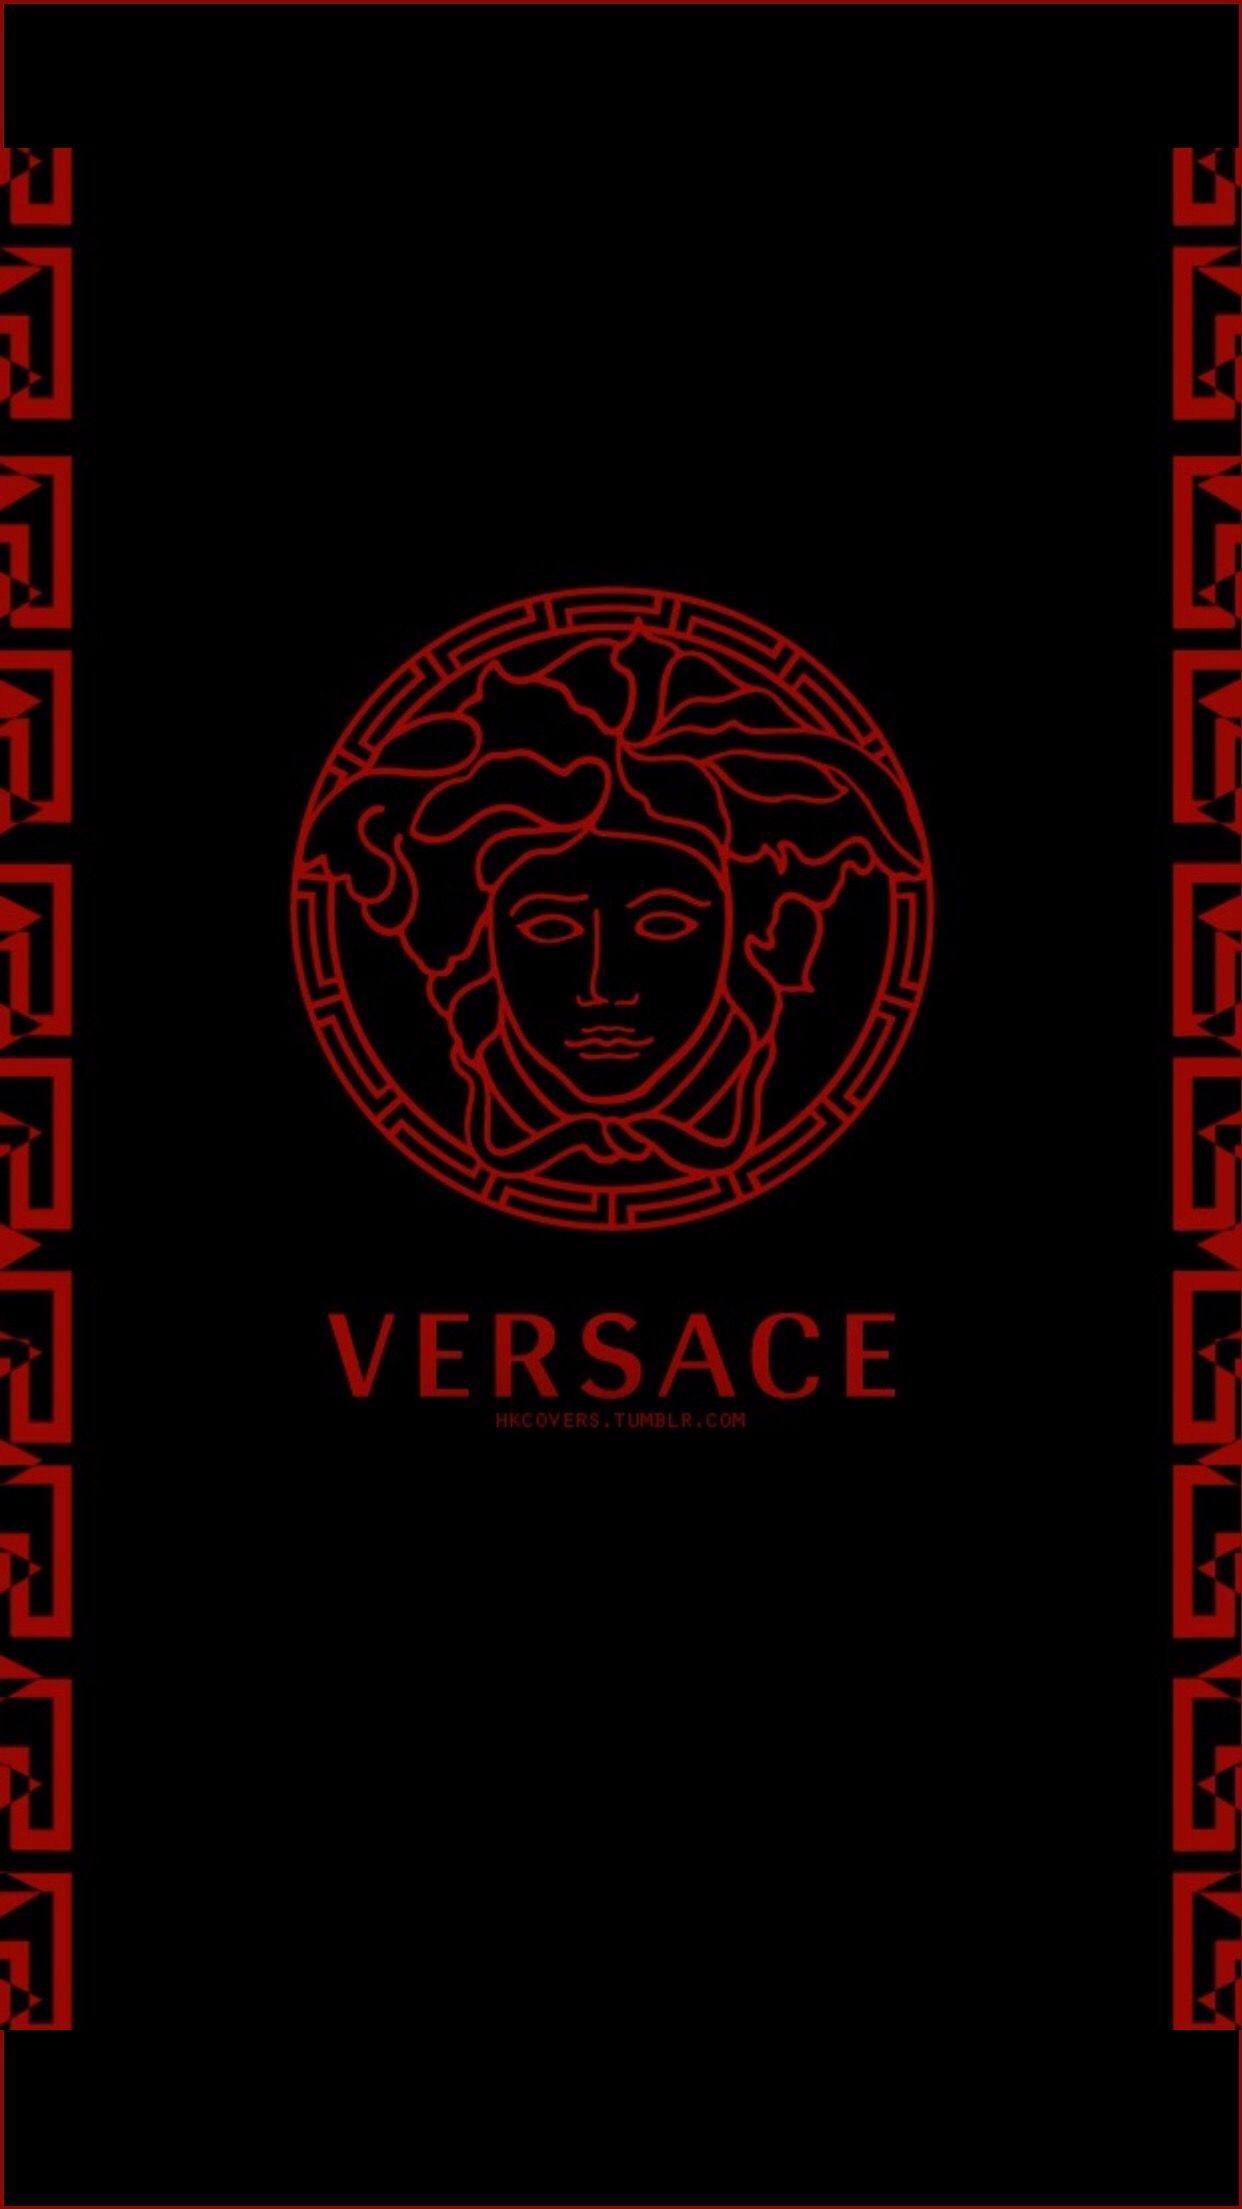 Versace wallpaper Gallery